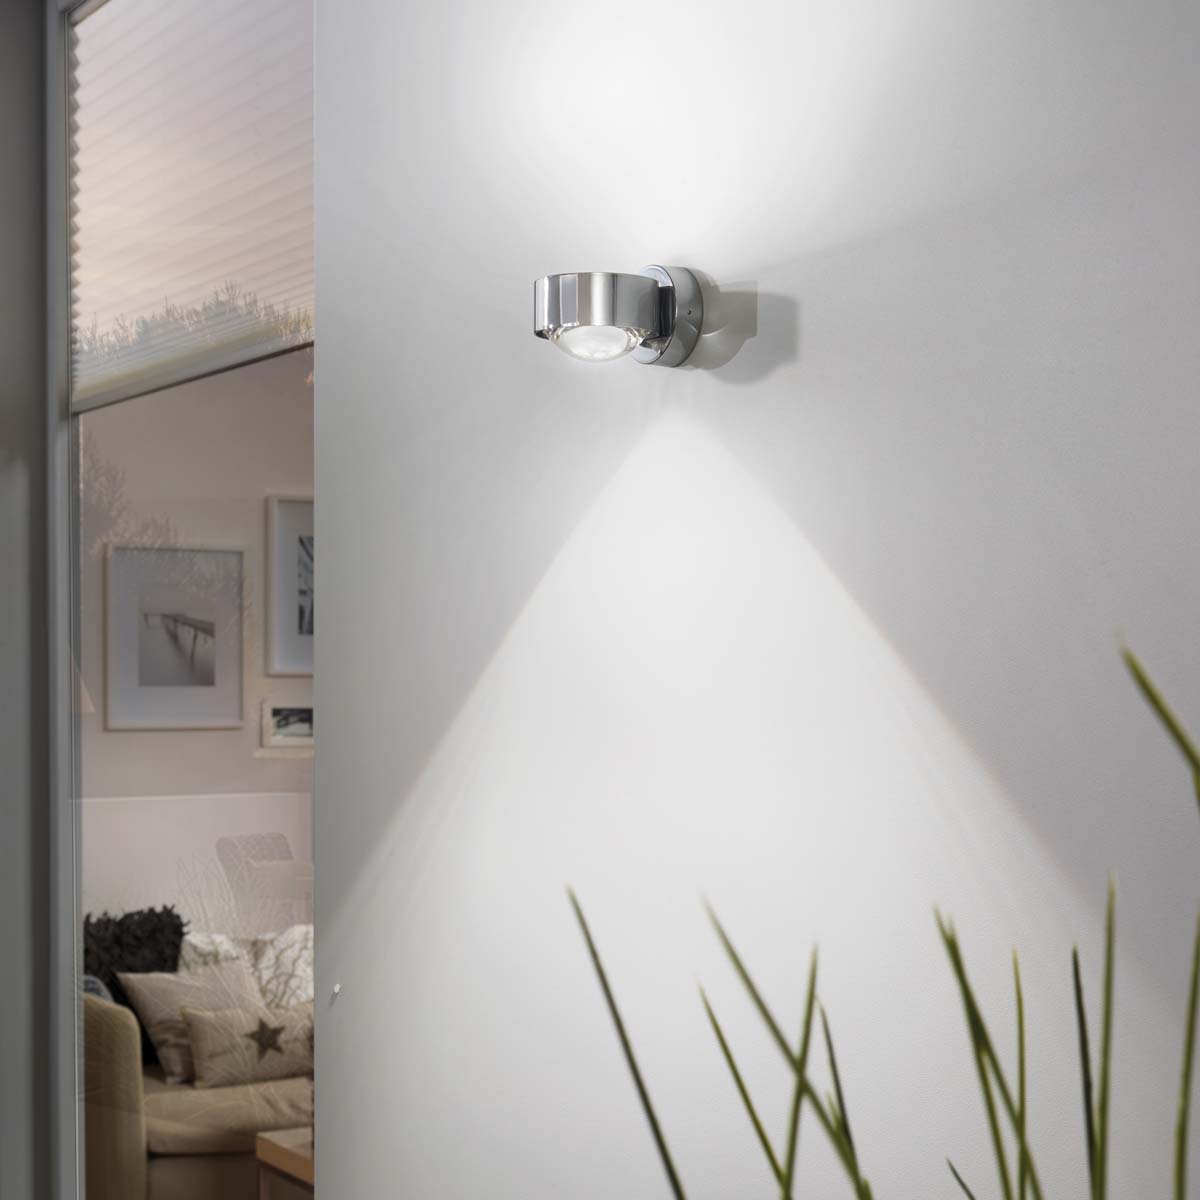 Wandlampe Design Wohnzimmer Leuchte Küchen Strahler Aluminium Flur Lampe magenta 